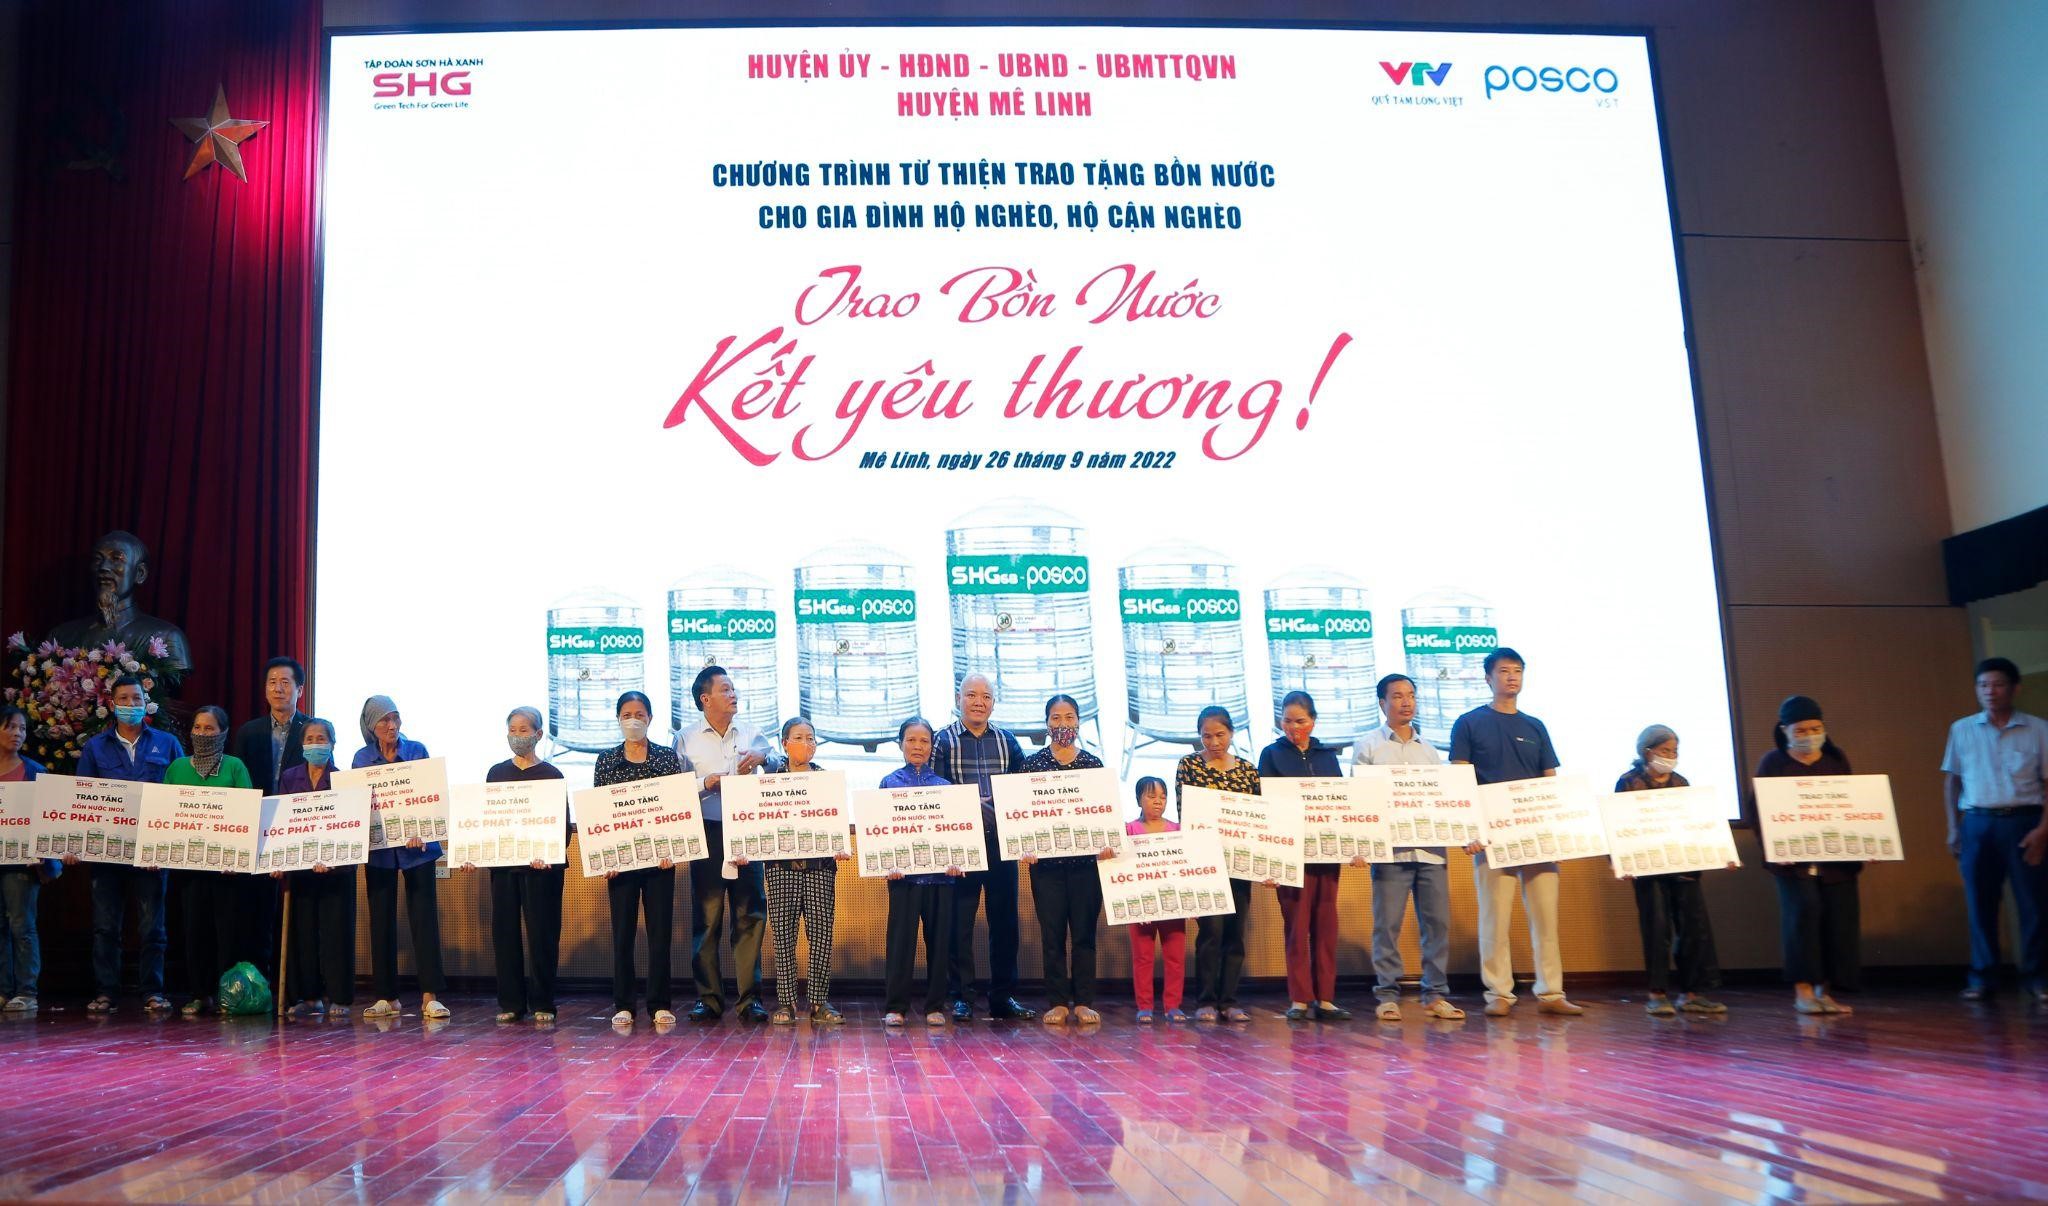 “Trao bồn nước - Kết yêu thương” được phối hợp tổ chức bởi Tập đoàn Sơn Hà Xanh, Công ty TNHH POSCO VST và Quỹ Tấm lòng Việt - Đài truyền hình Việt Nam.